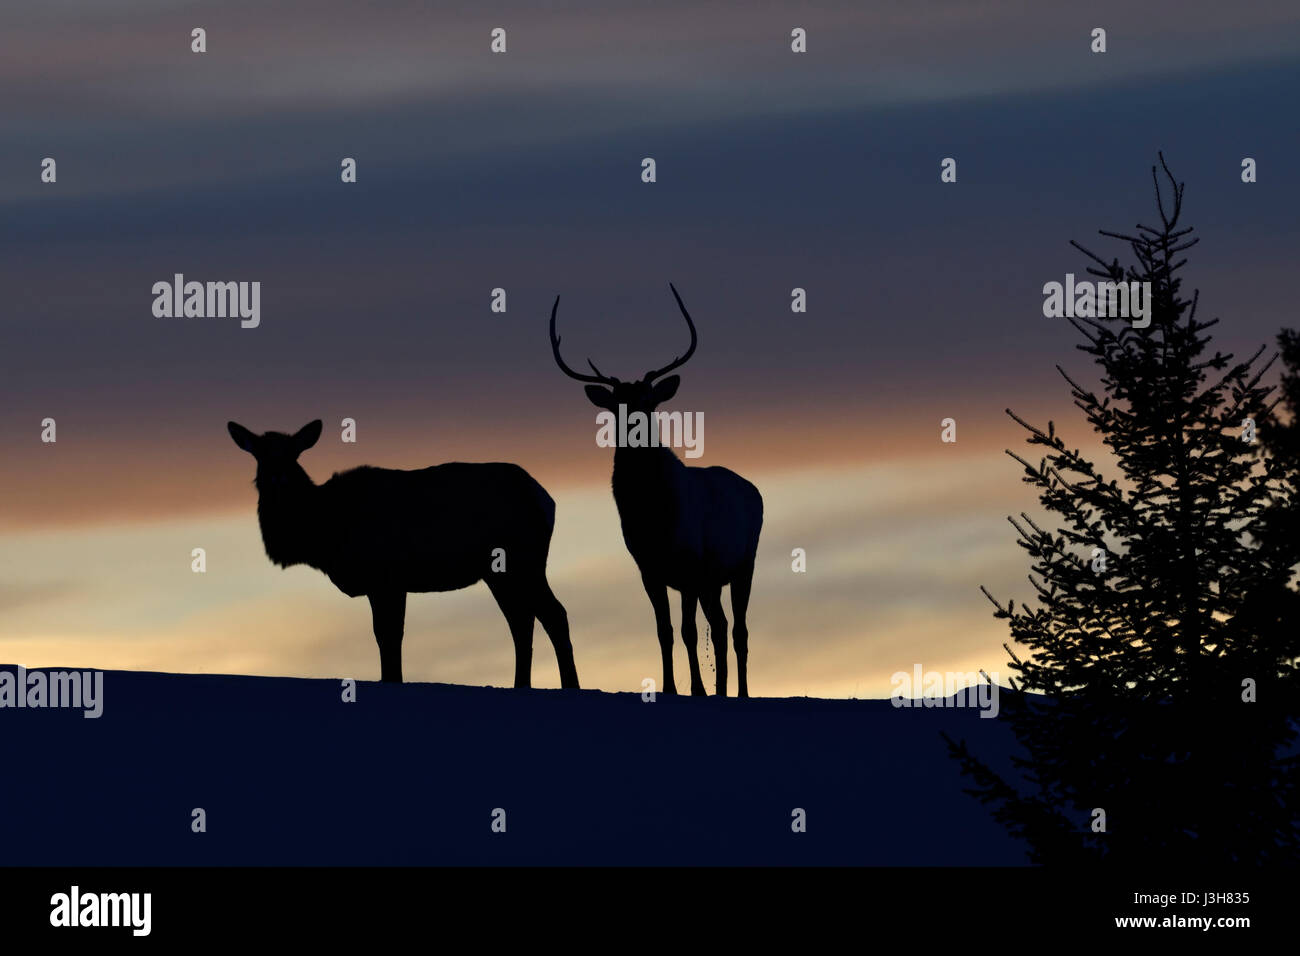 Élans ( Cervus canadensis ), la paire en hiver, debout sur une petite colline, Knoll, silhouetté contre le ciel du soir, nice shot rétroéclairage, Yellowstone, aux États-Unis. Banque D'Images